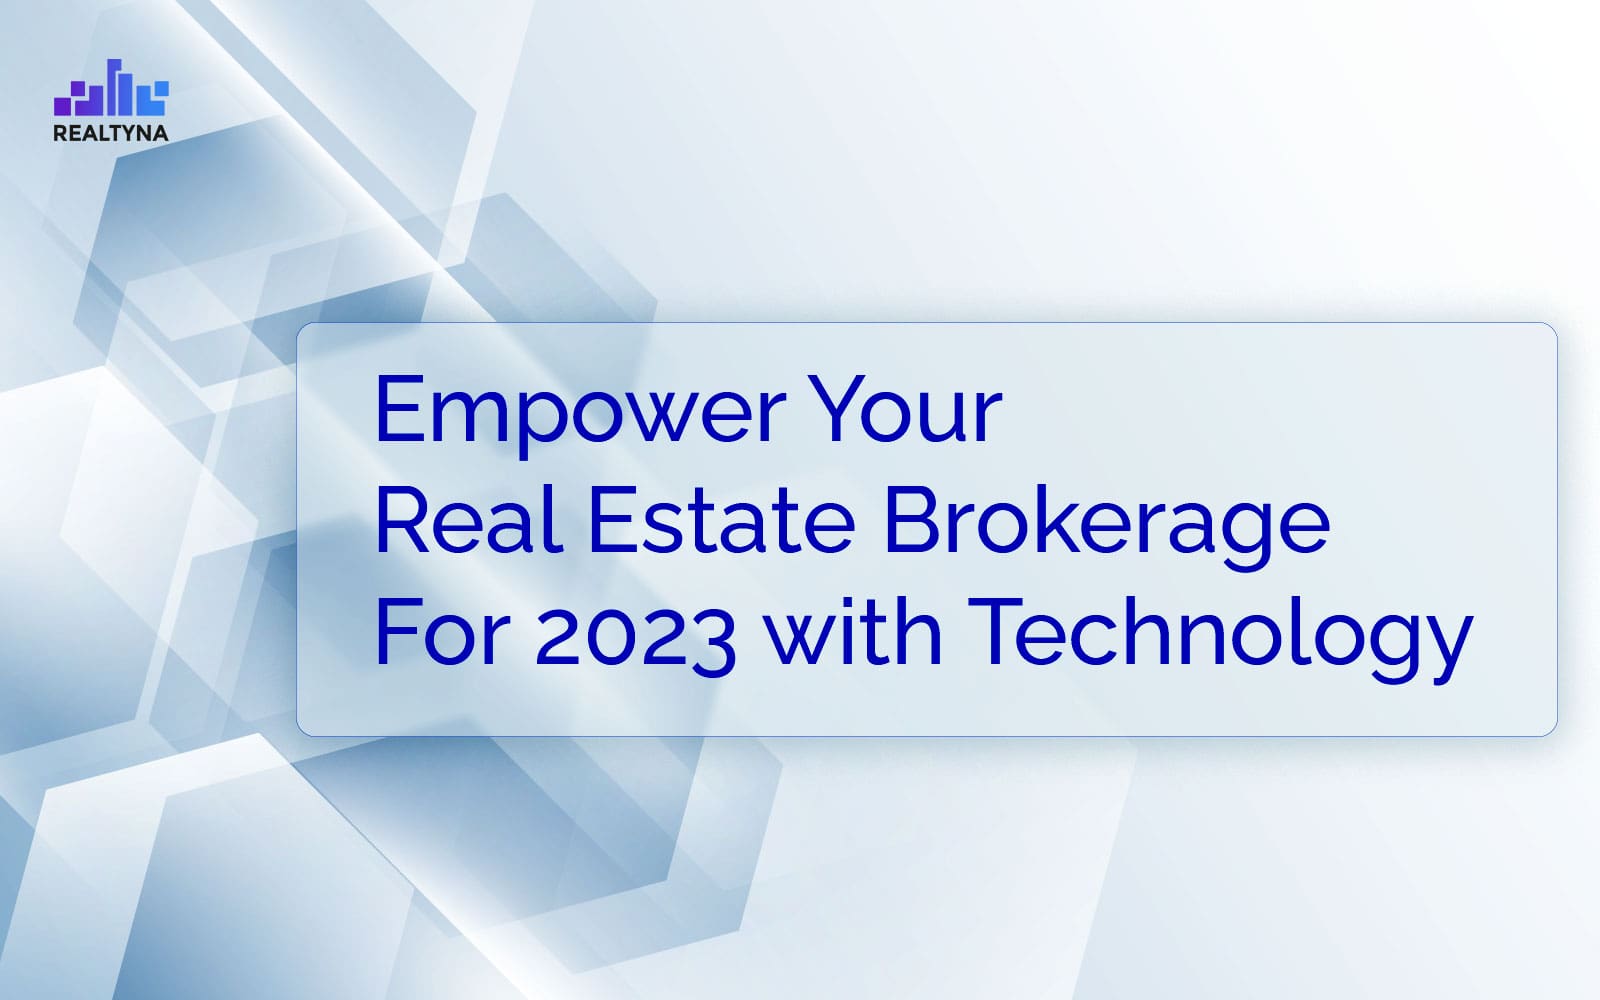 rna empower brokerage 2023 technology